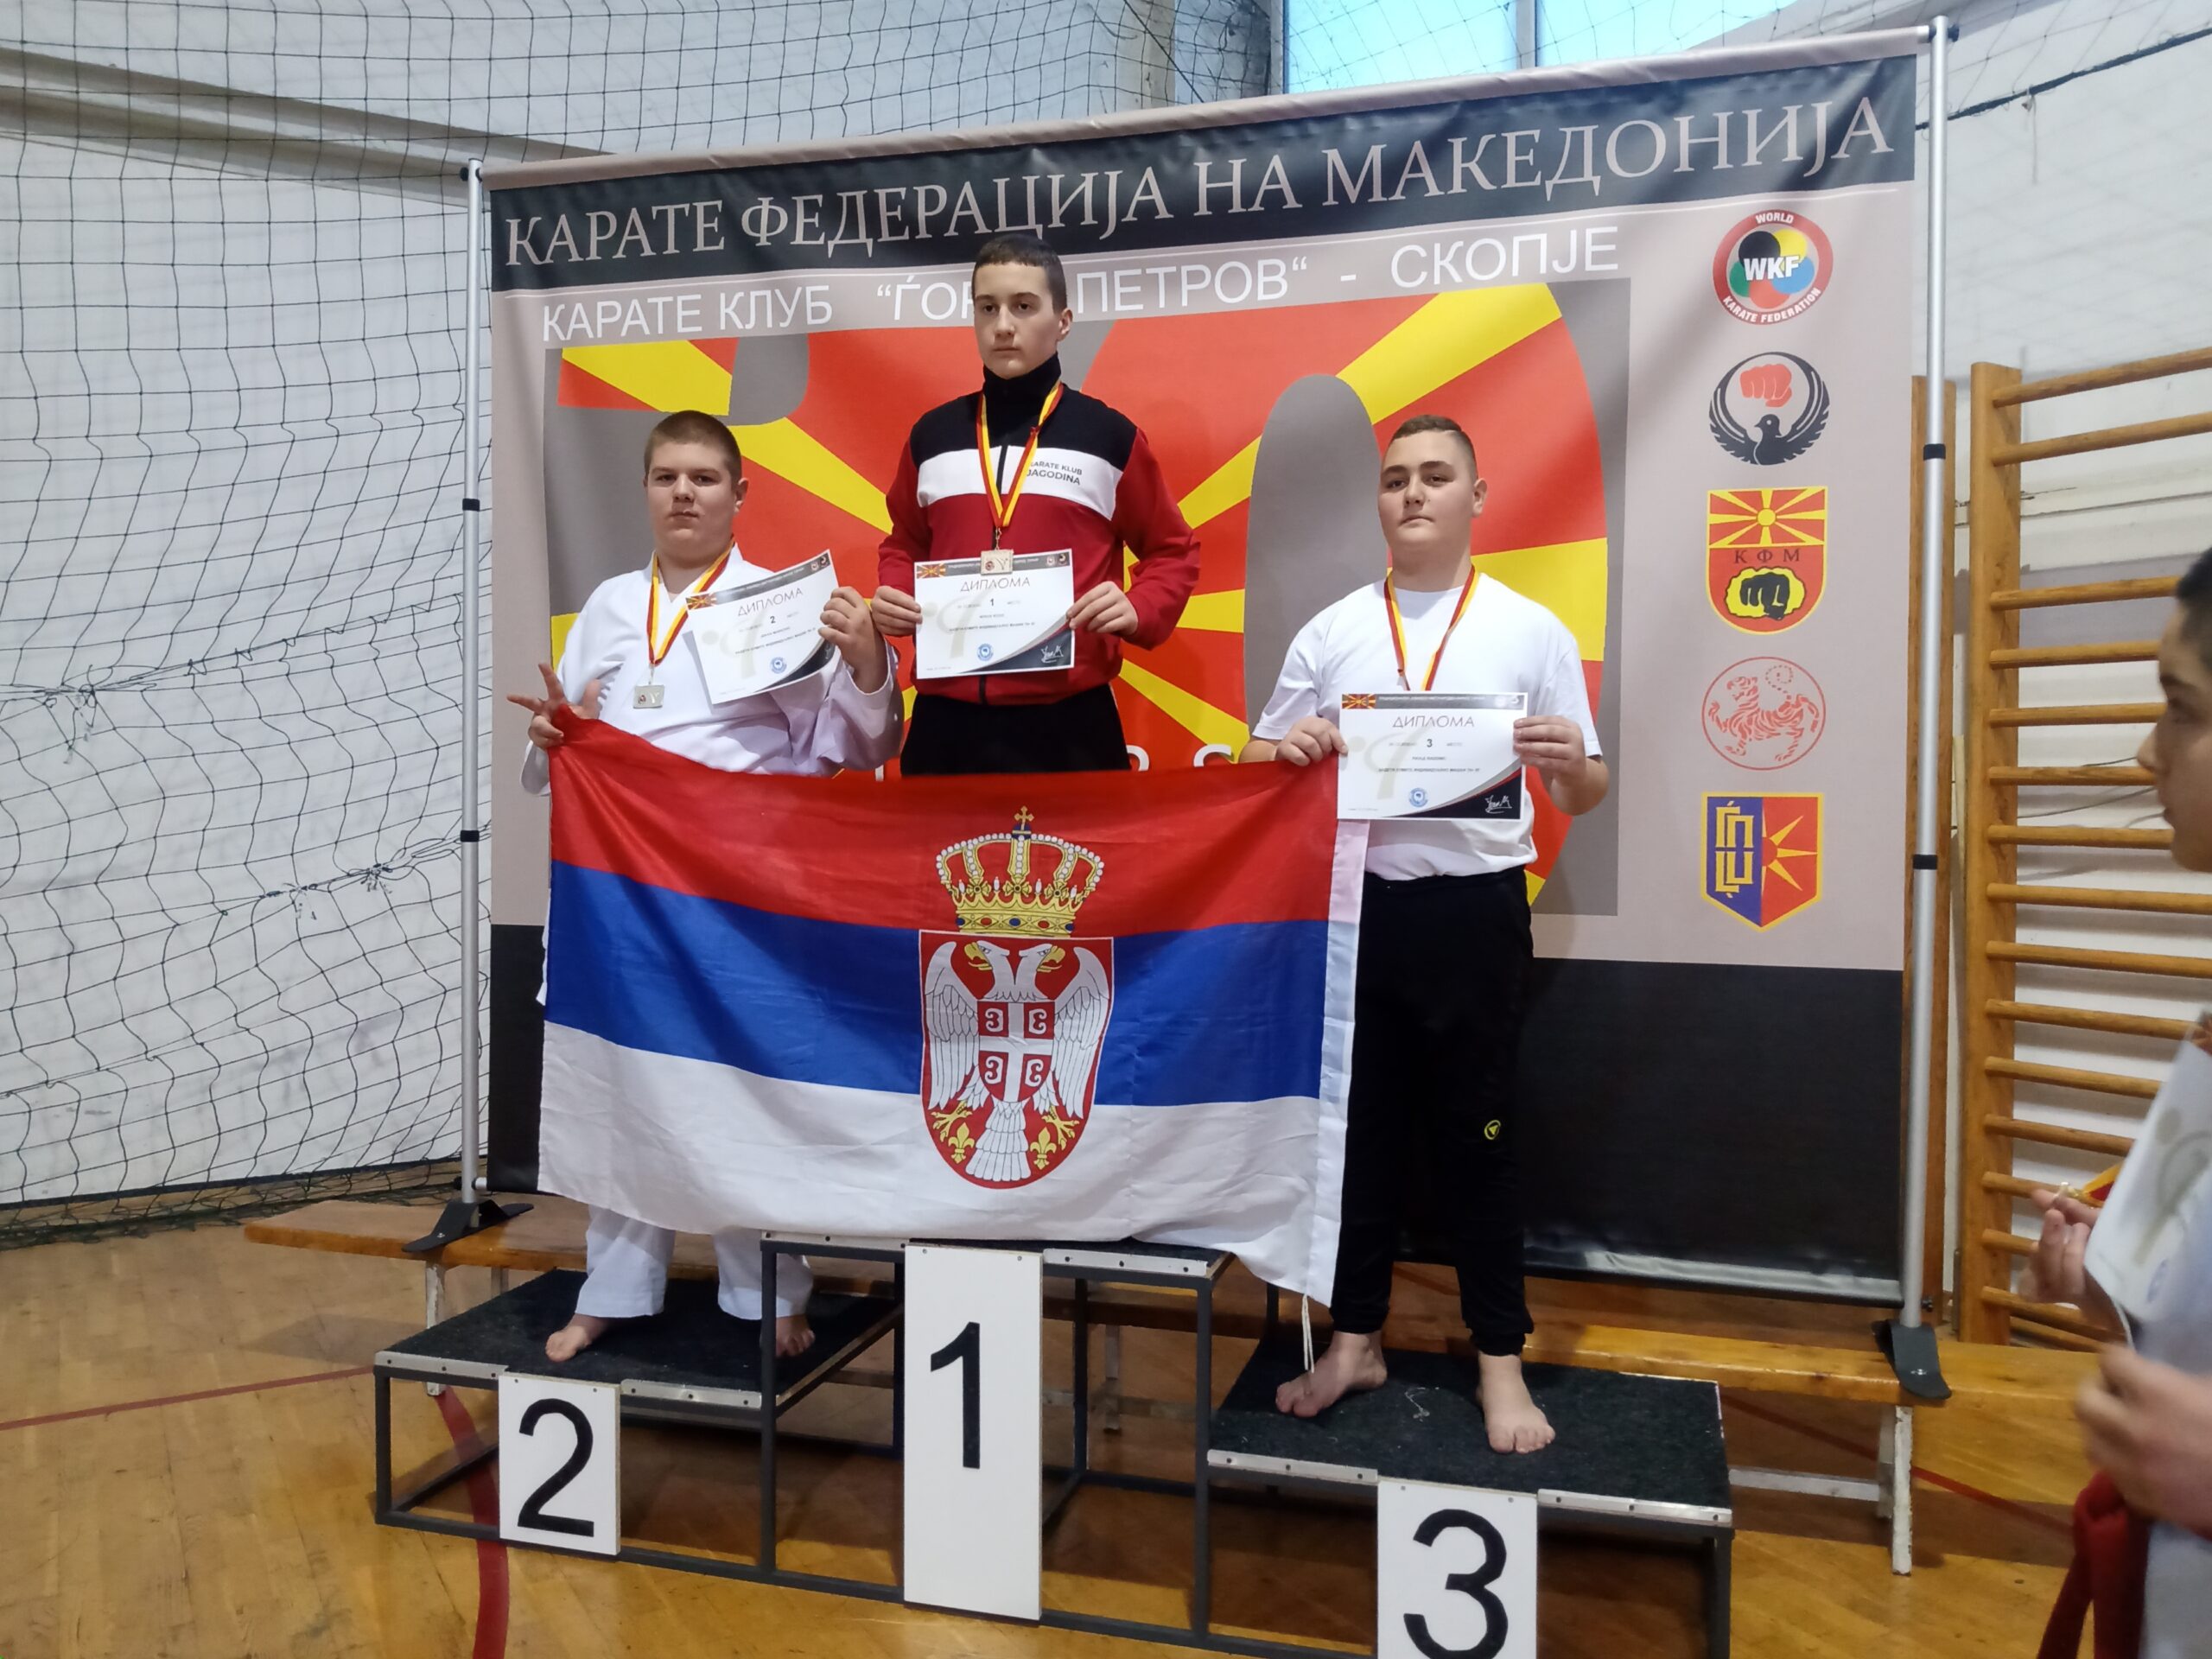 Tri srebrne i deset bronzanih medalja za karatiste Samuraja na turniru u Makedoniji